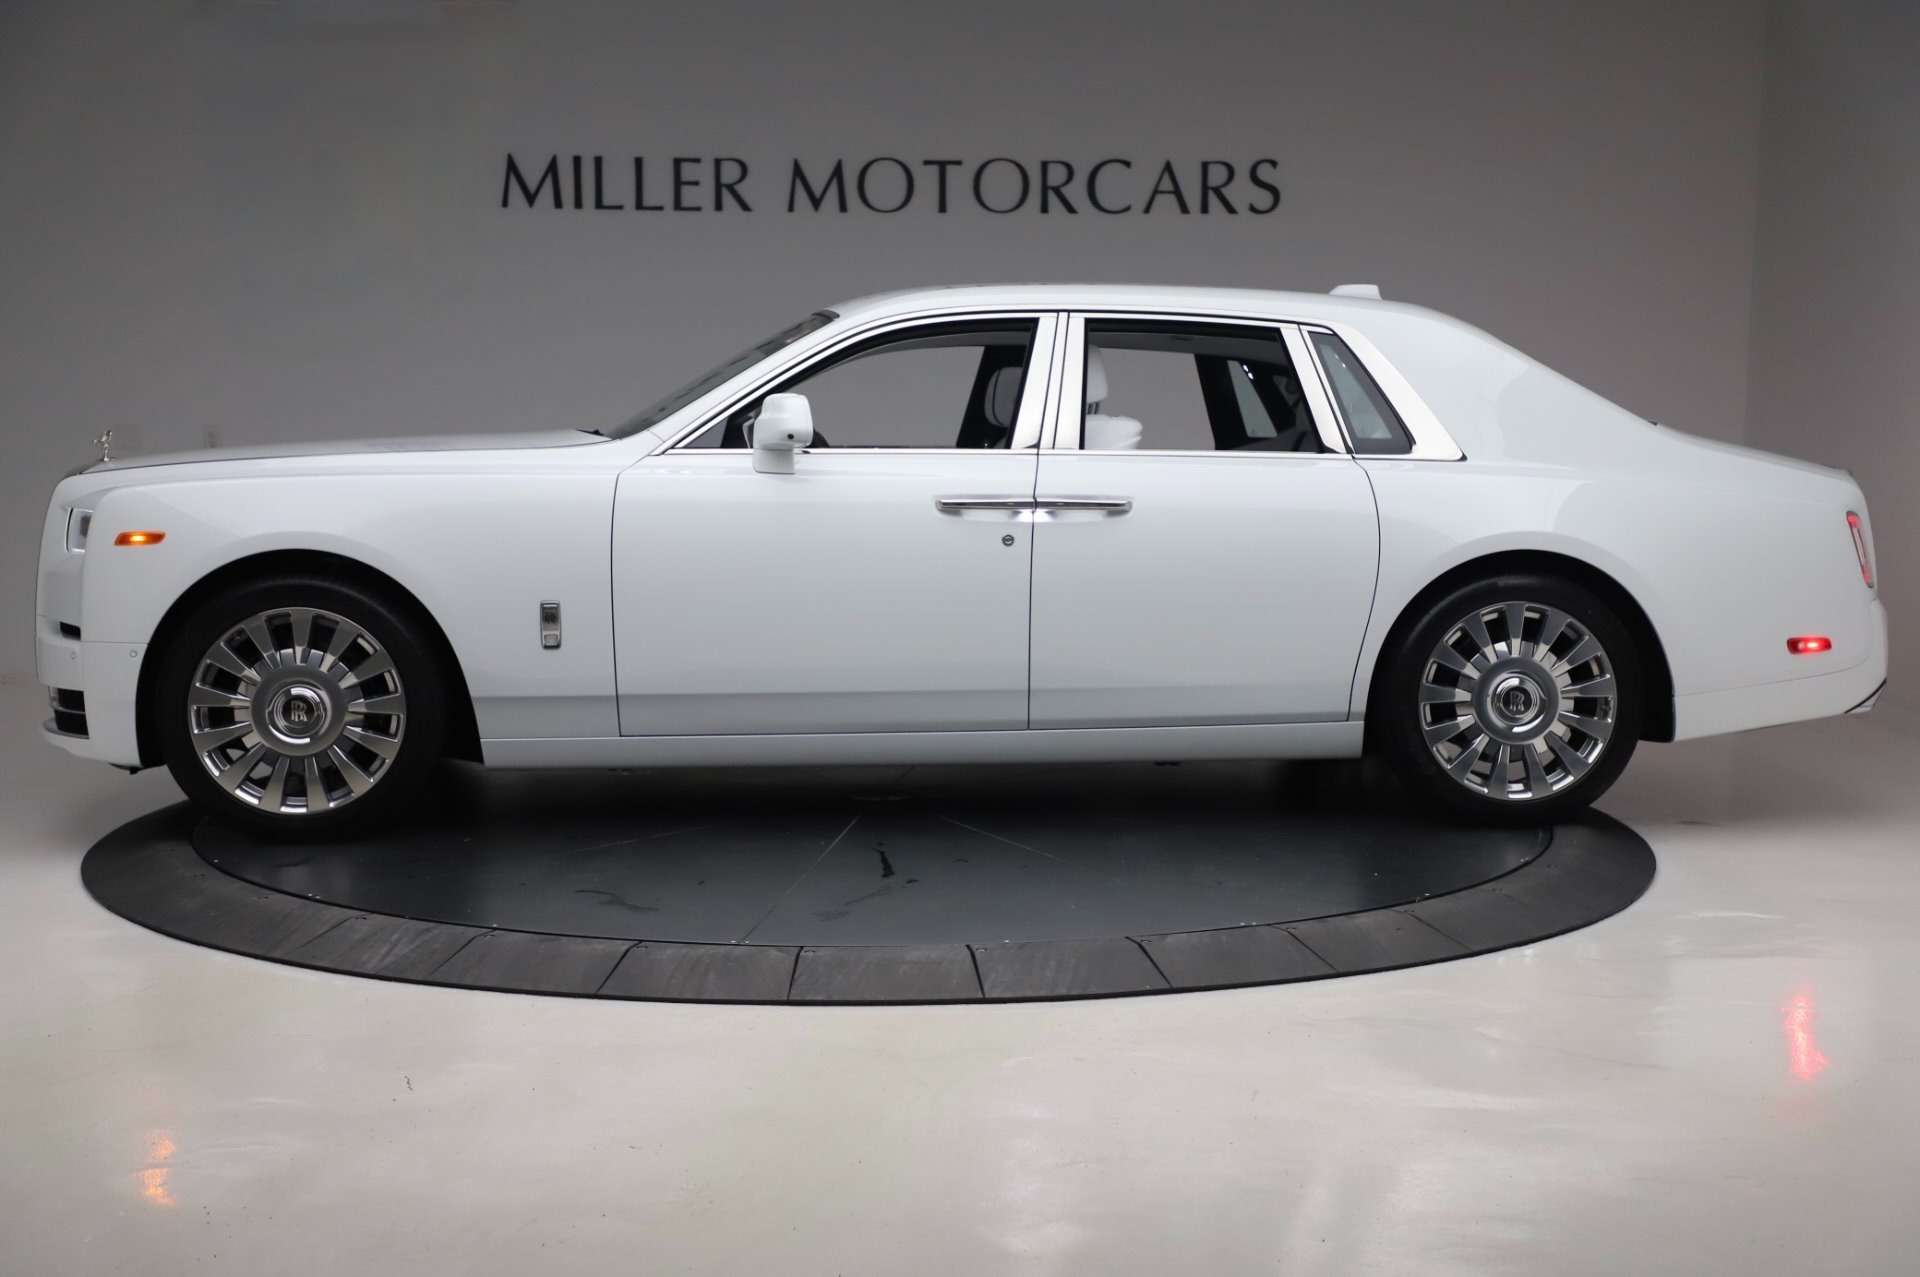 New 2020 Rolls Royce Phantom For Sale 545 200 Miller